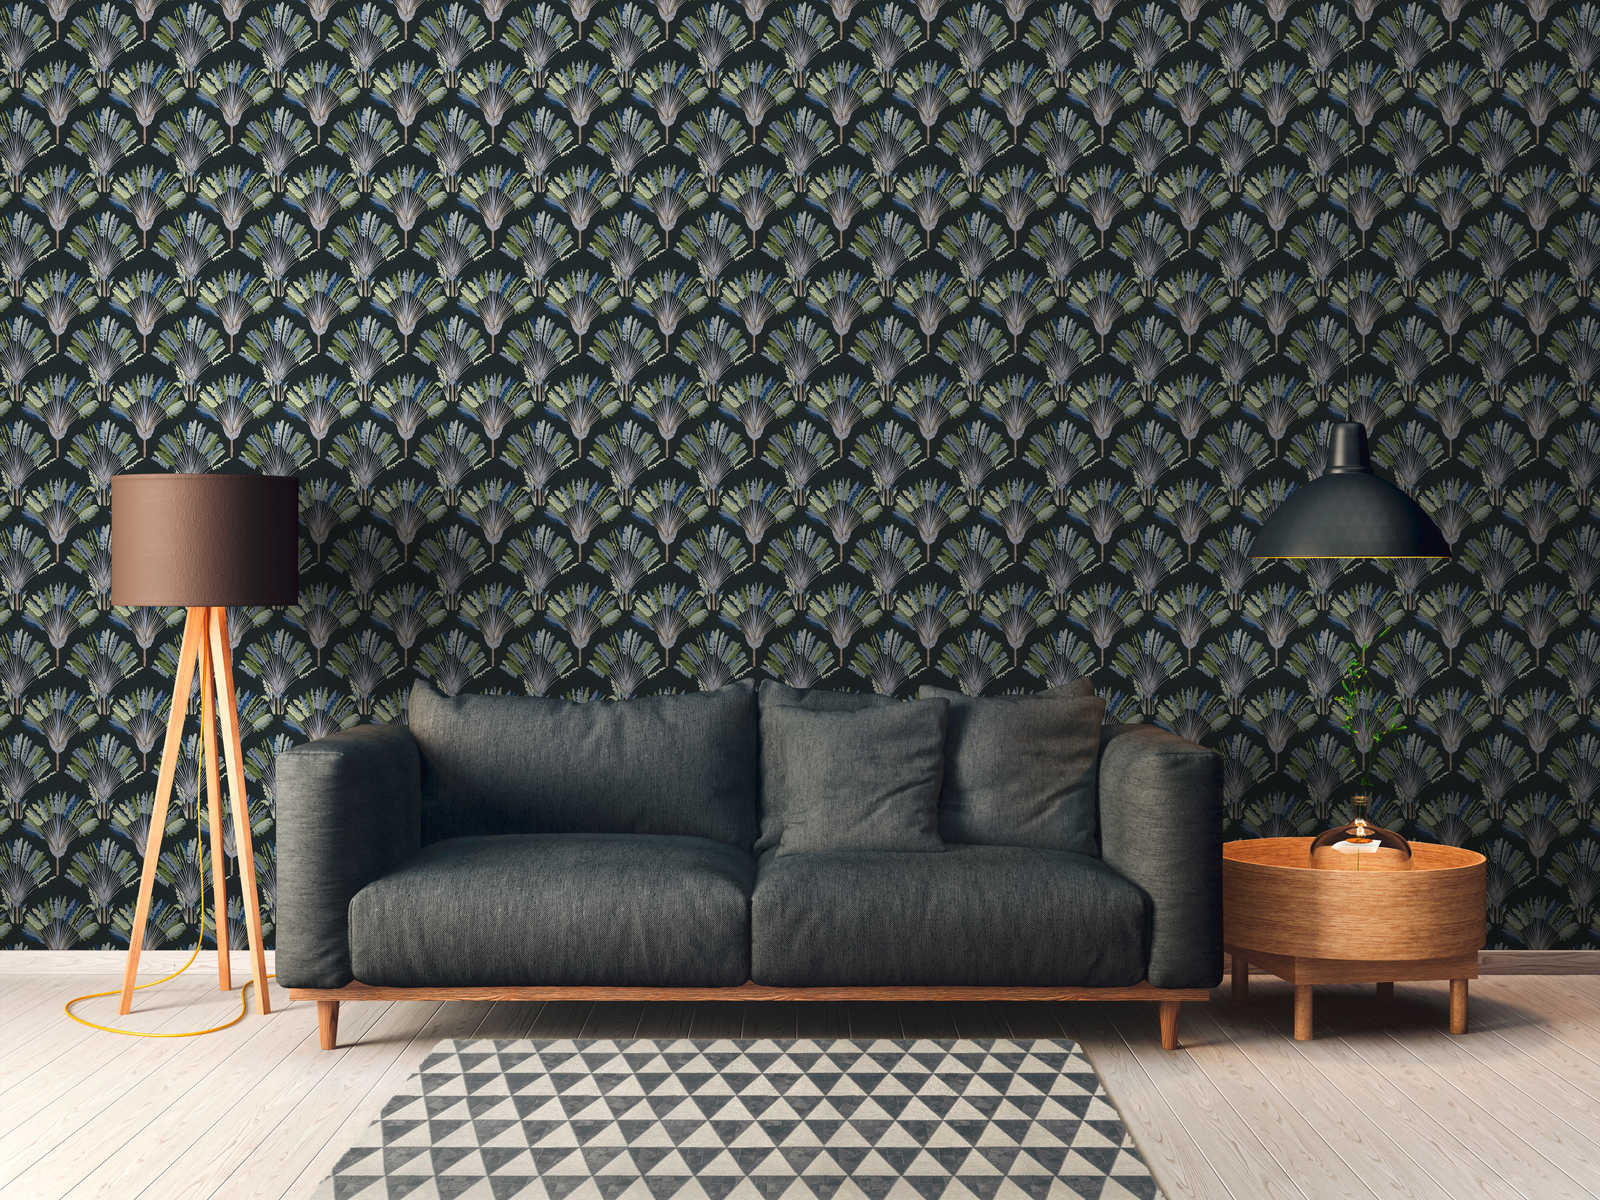             Dunkle Tapete Palmen Design mit Musterdruck – Grün, Schwarz, Blau
        